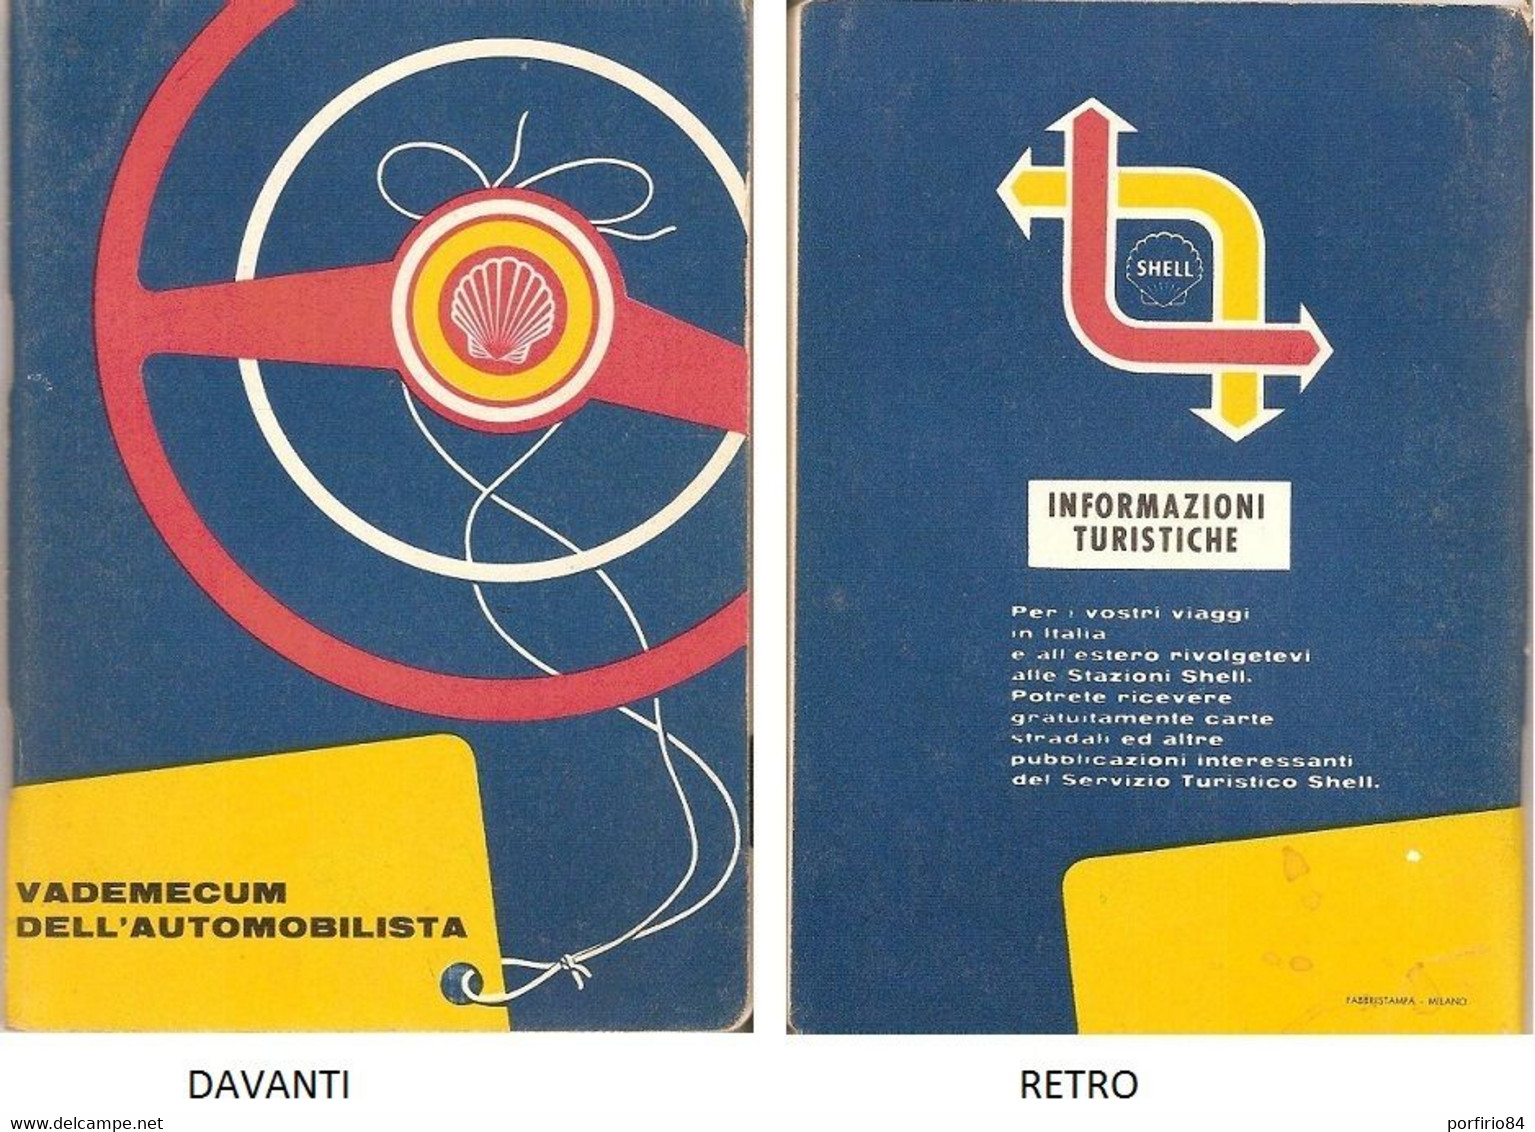 VADEMECUM DELL'AUTOMOBILISTA - 1960 - SHELL - Collectors Manuals